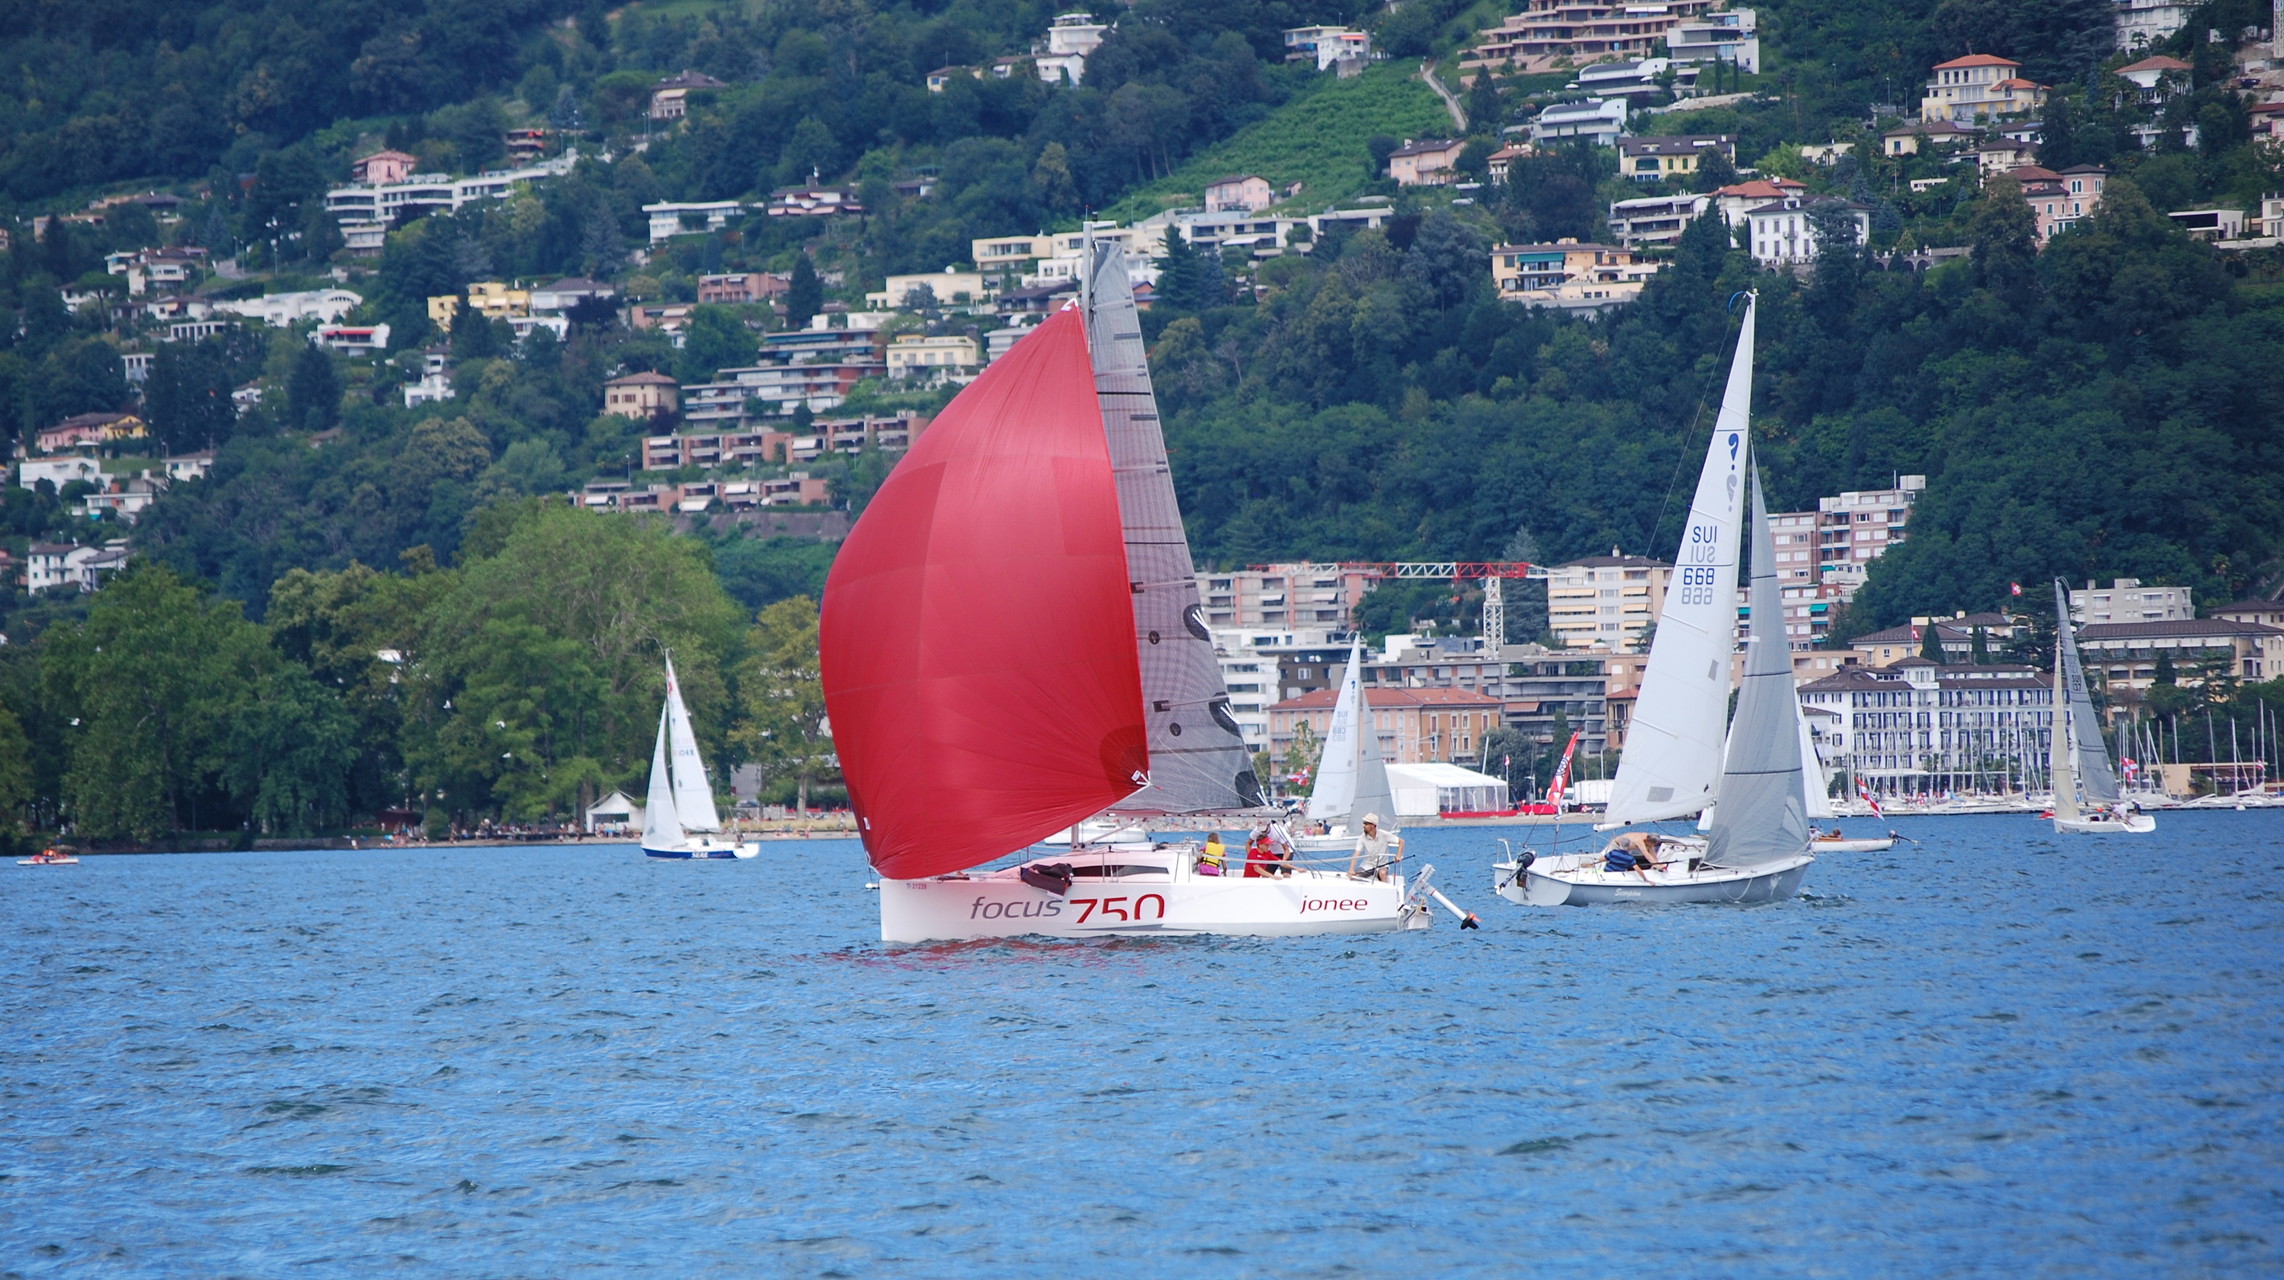  Yardstick  Regata delle tre coppe  CV Lago di Lugano